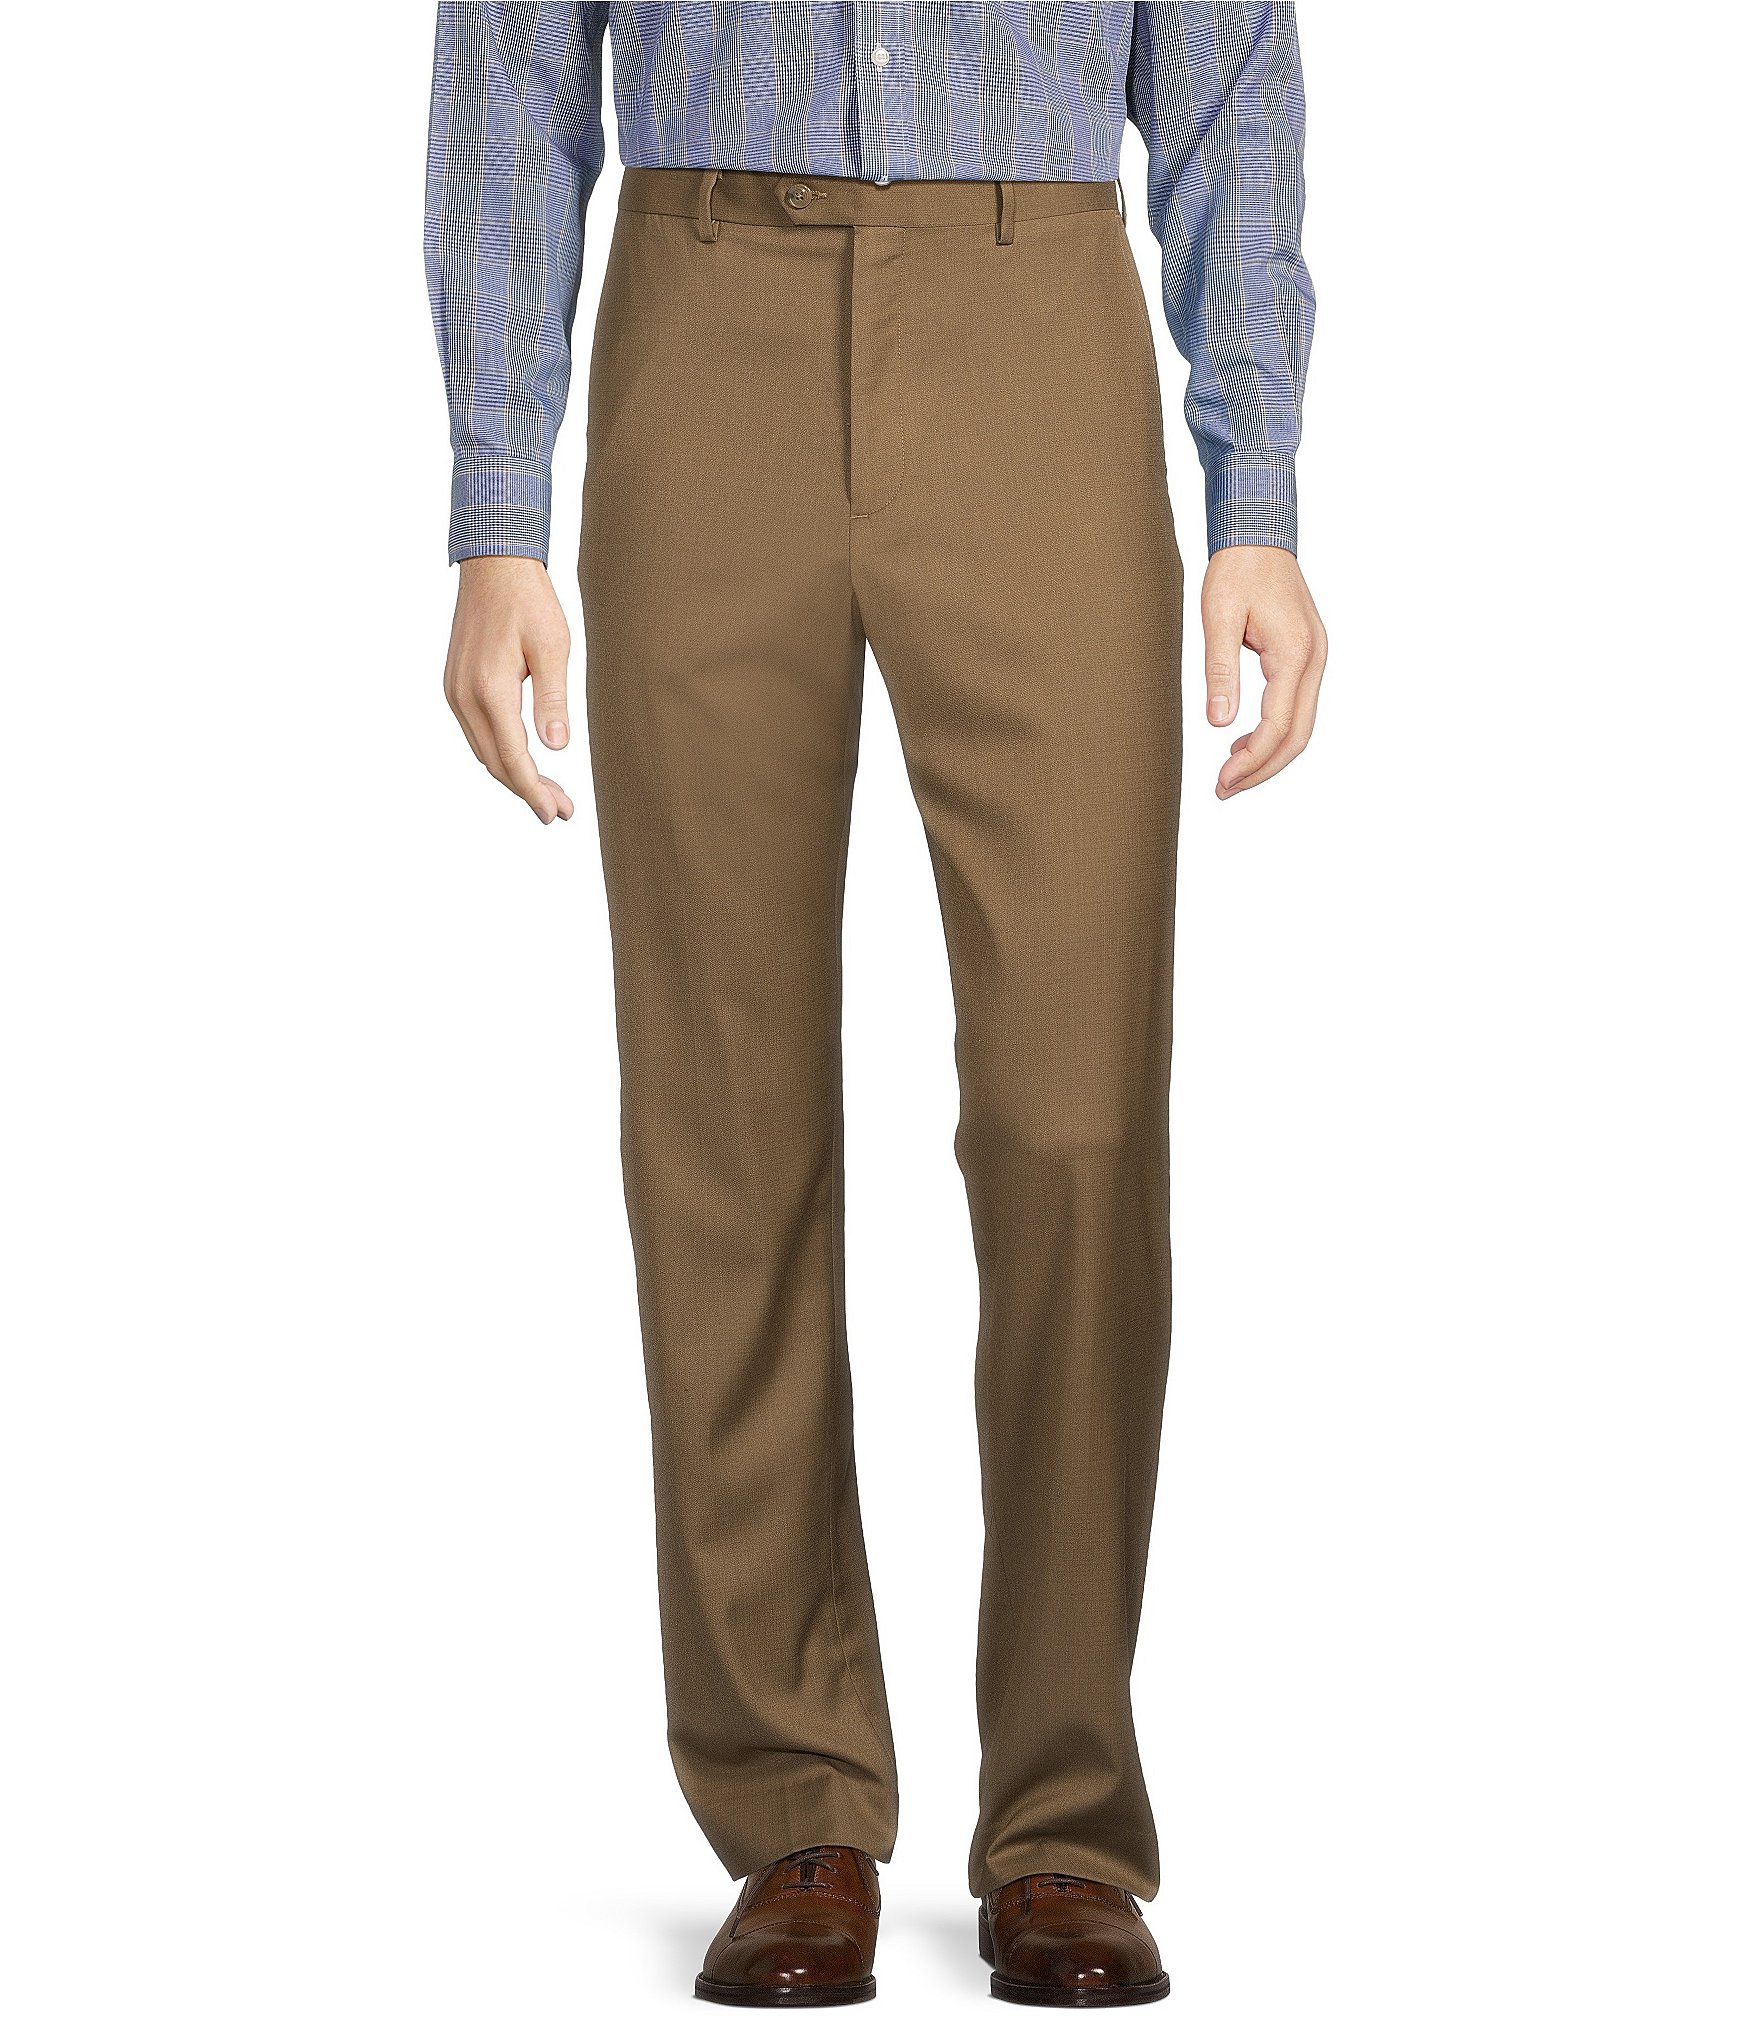 Twill Pants - Classic Uniform Pants